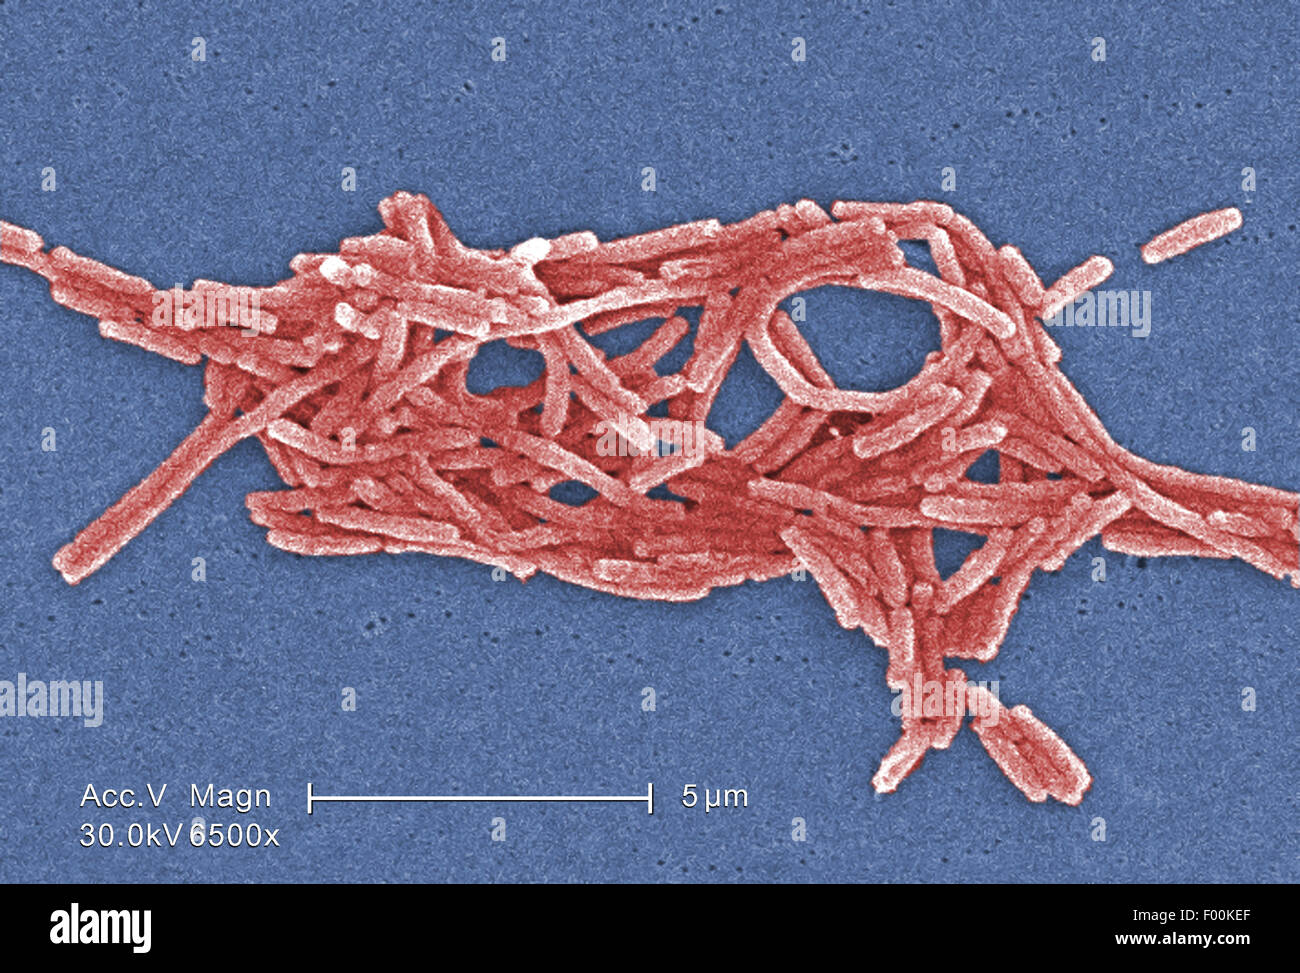 Colorea el análisis micrografía de electrones (SEM) representa un grupo de bacterias Gram-negativas la bacteria Legionella pneumophila. Mag 6500X Foto de stock